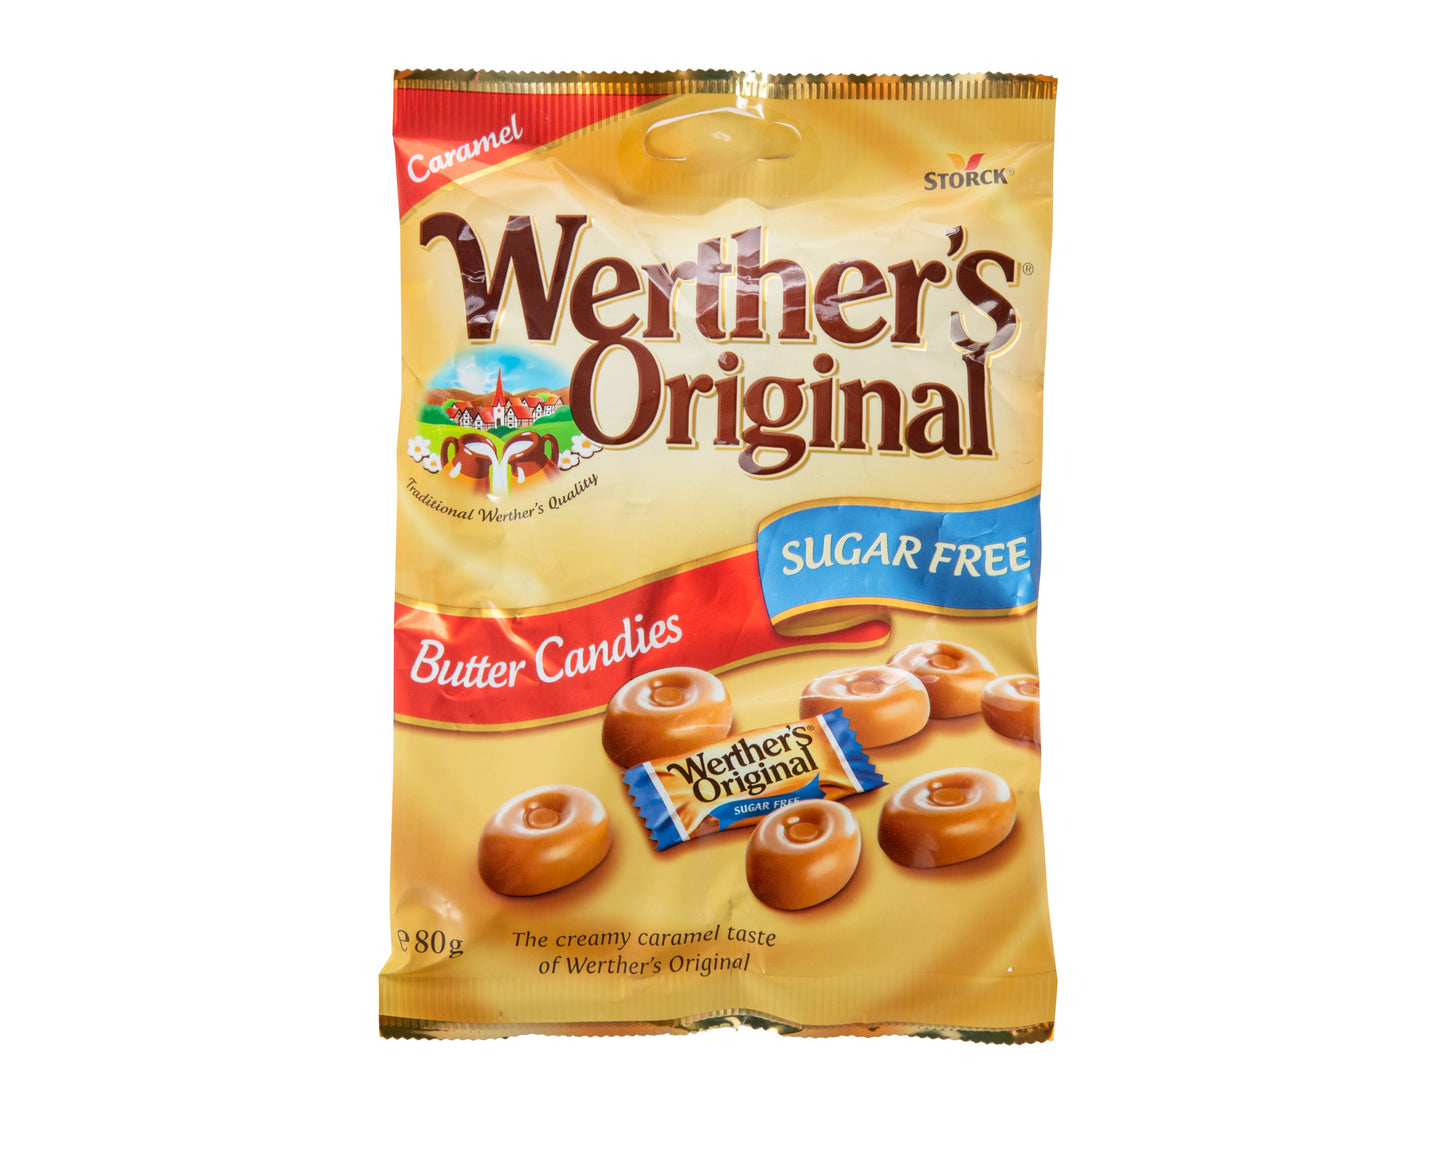 Werther's Original Sugar Free Butter Candies Bag